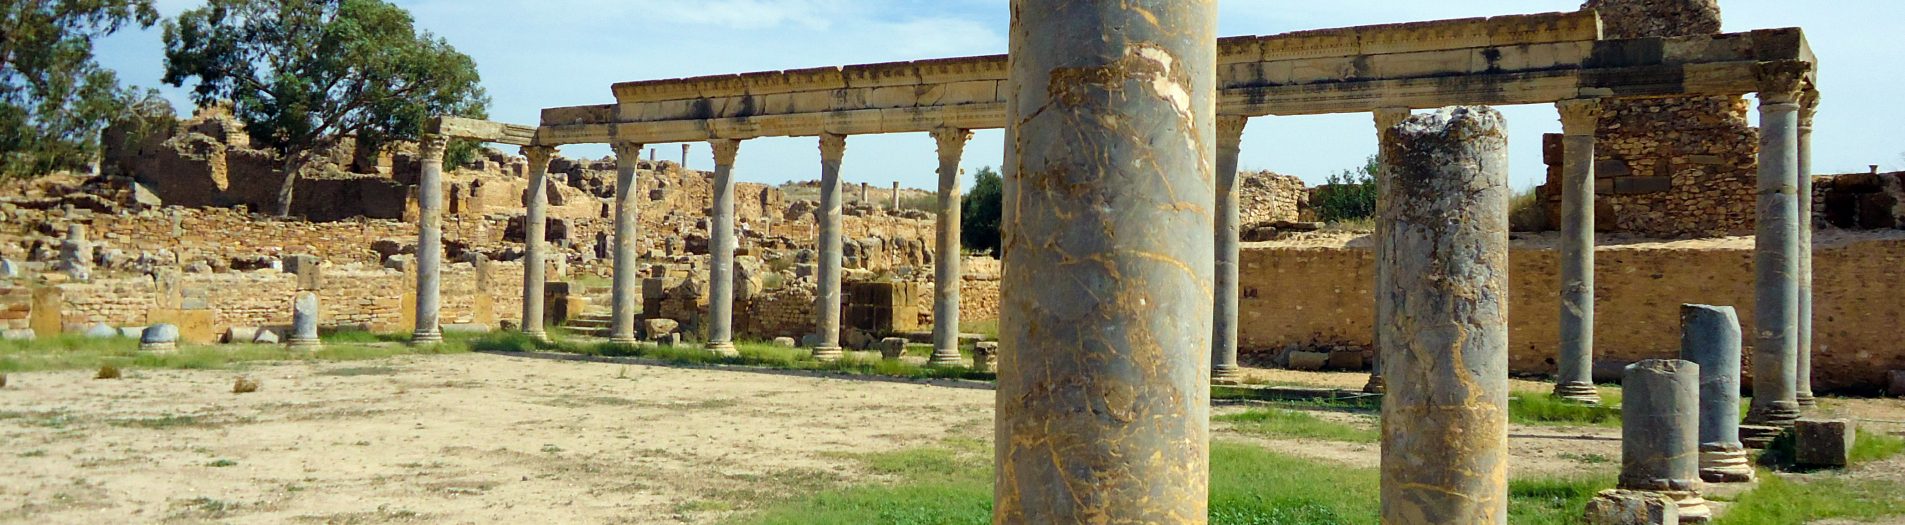 Les lieux de sociabilité et des spectacles scéniques romains en Tunisie